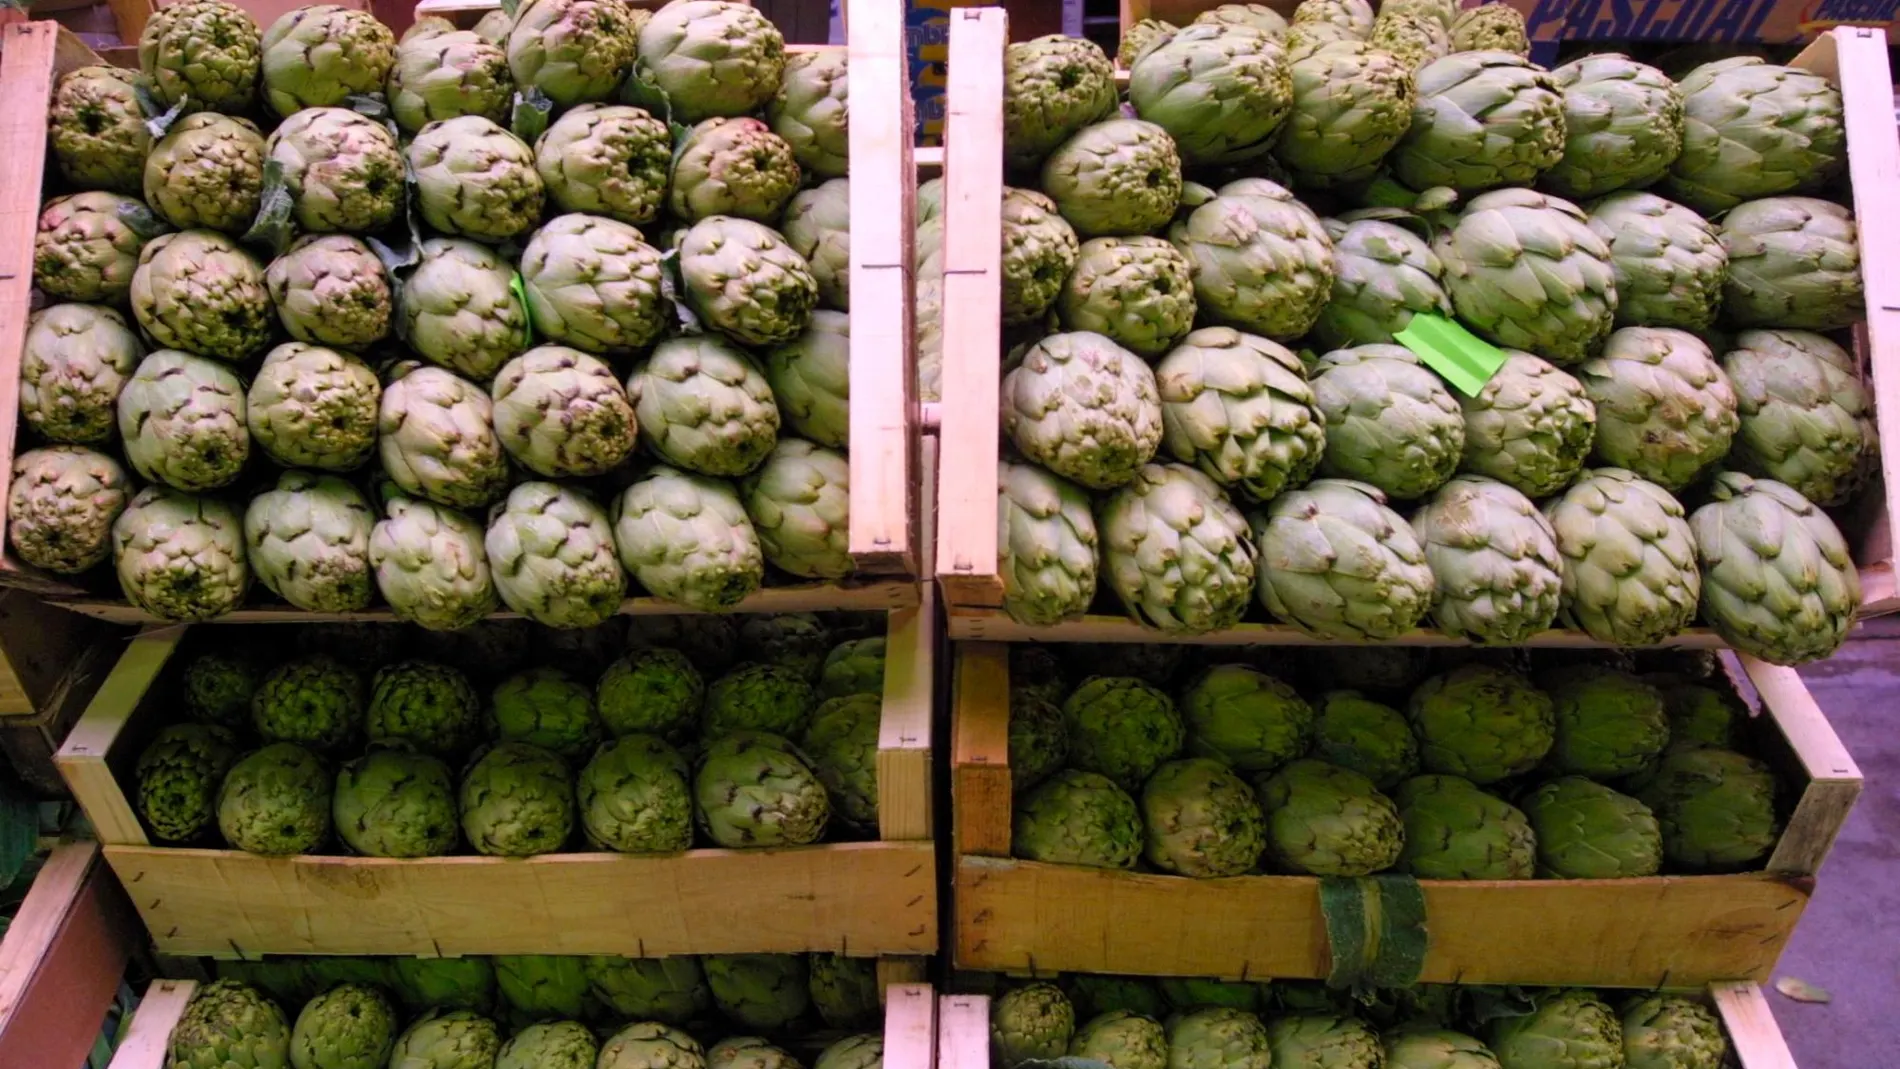 La alcachofa, según los productores agrícolas, uno de las verduras más importantes para la economía murciana, por su alta demanda en el sector nacional e internacional